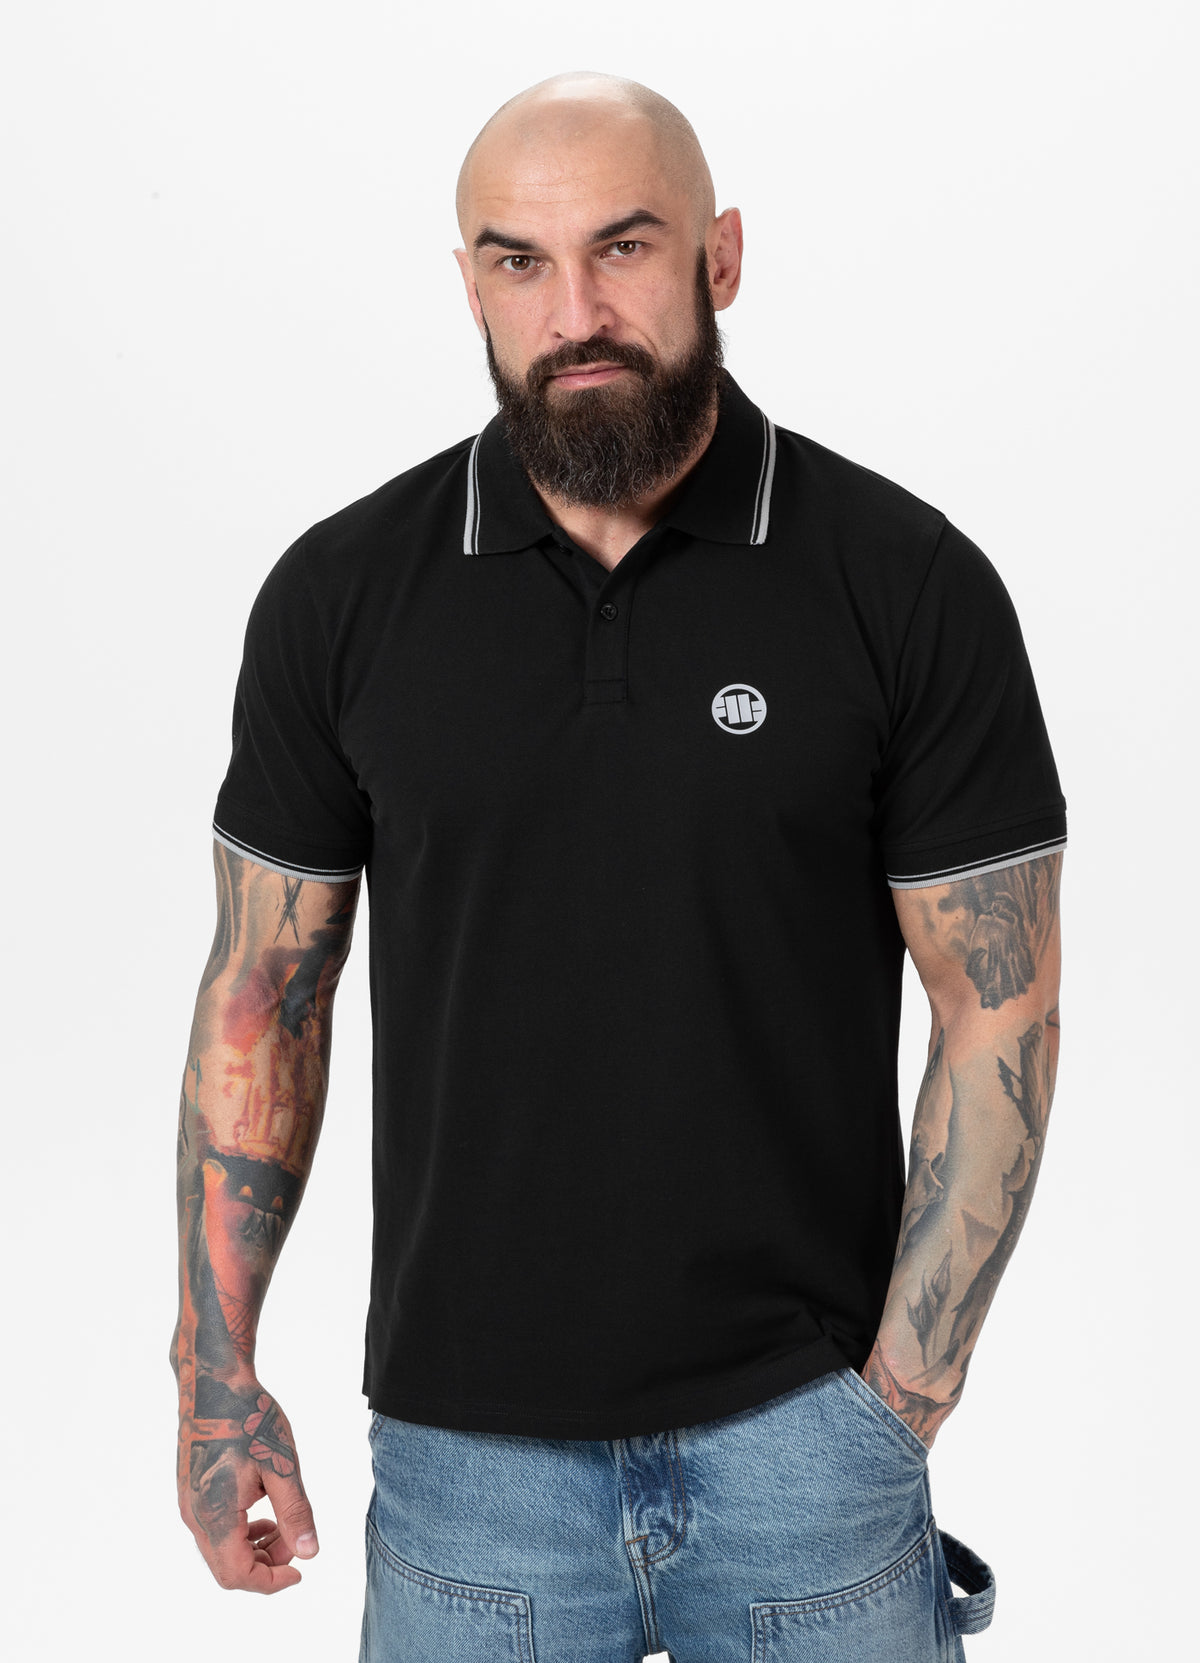 PIQUE STRIPES REGULAR Black Polo T-shirt - Pitbullstore.eu